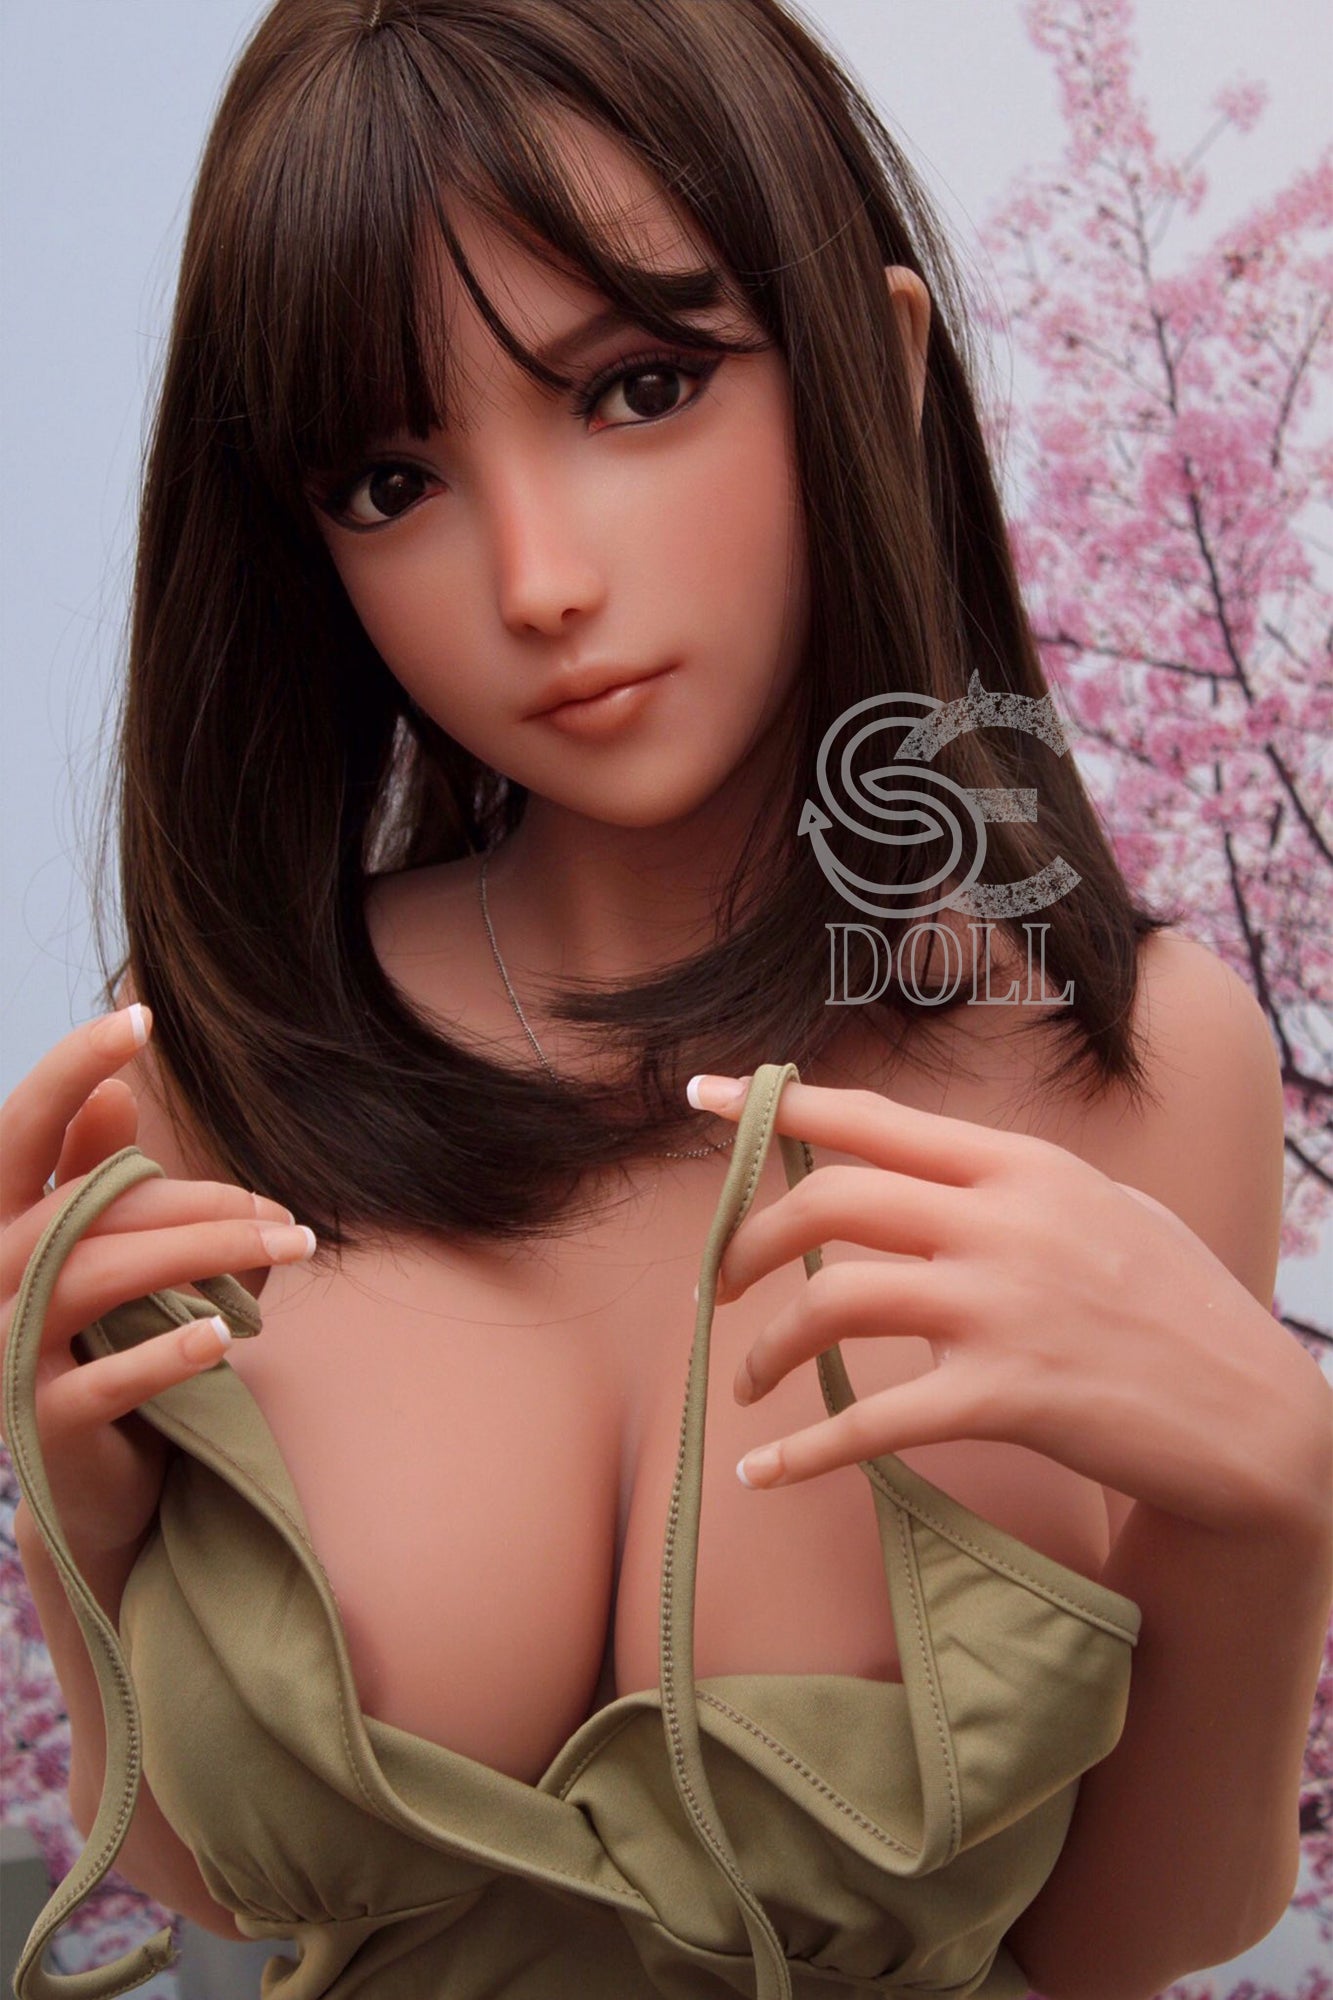 SEDOLL 161 cm F TPE - Elanie | Buy Sex Dolls at DOLLS ACTUALLY